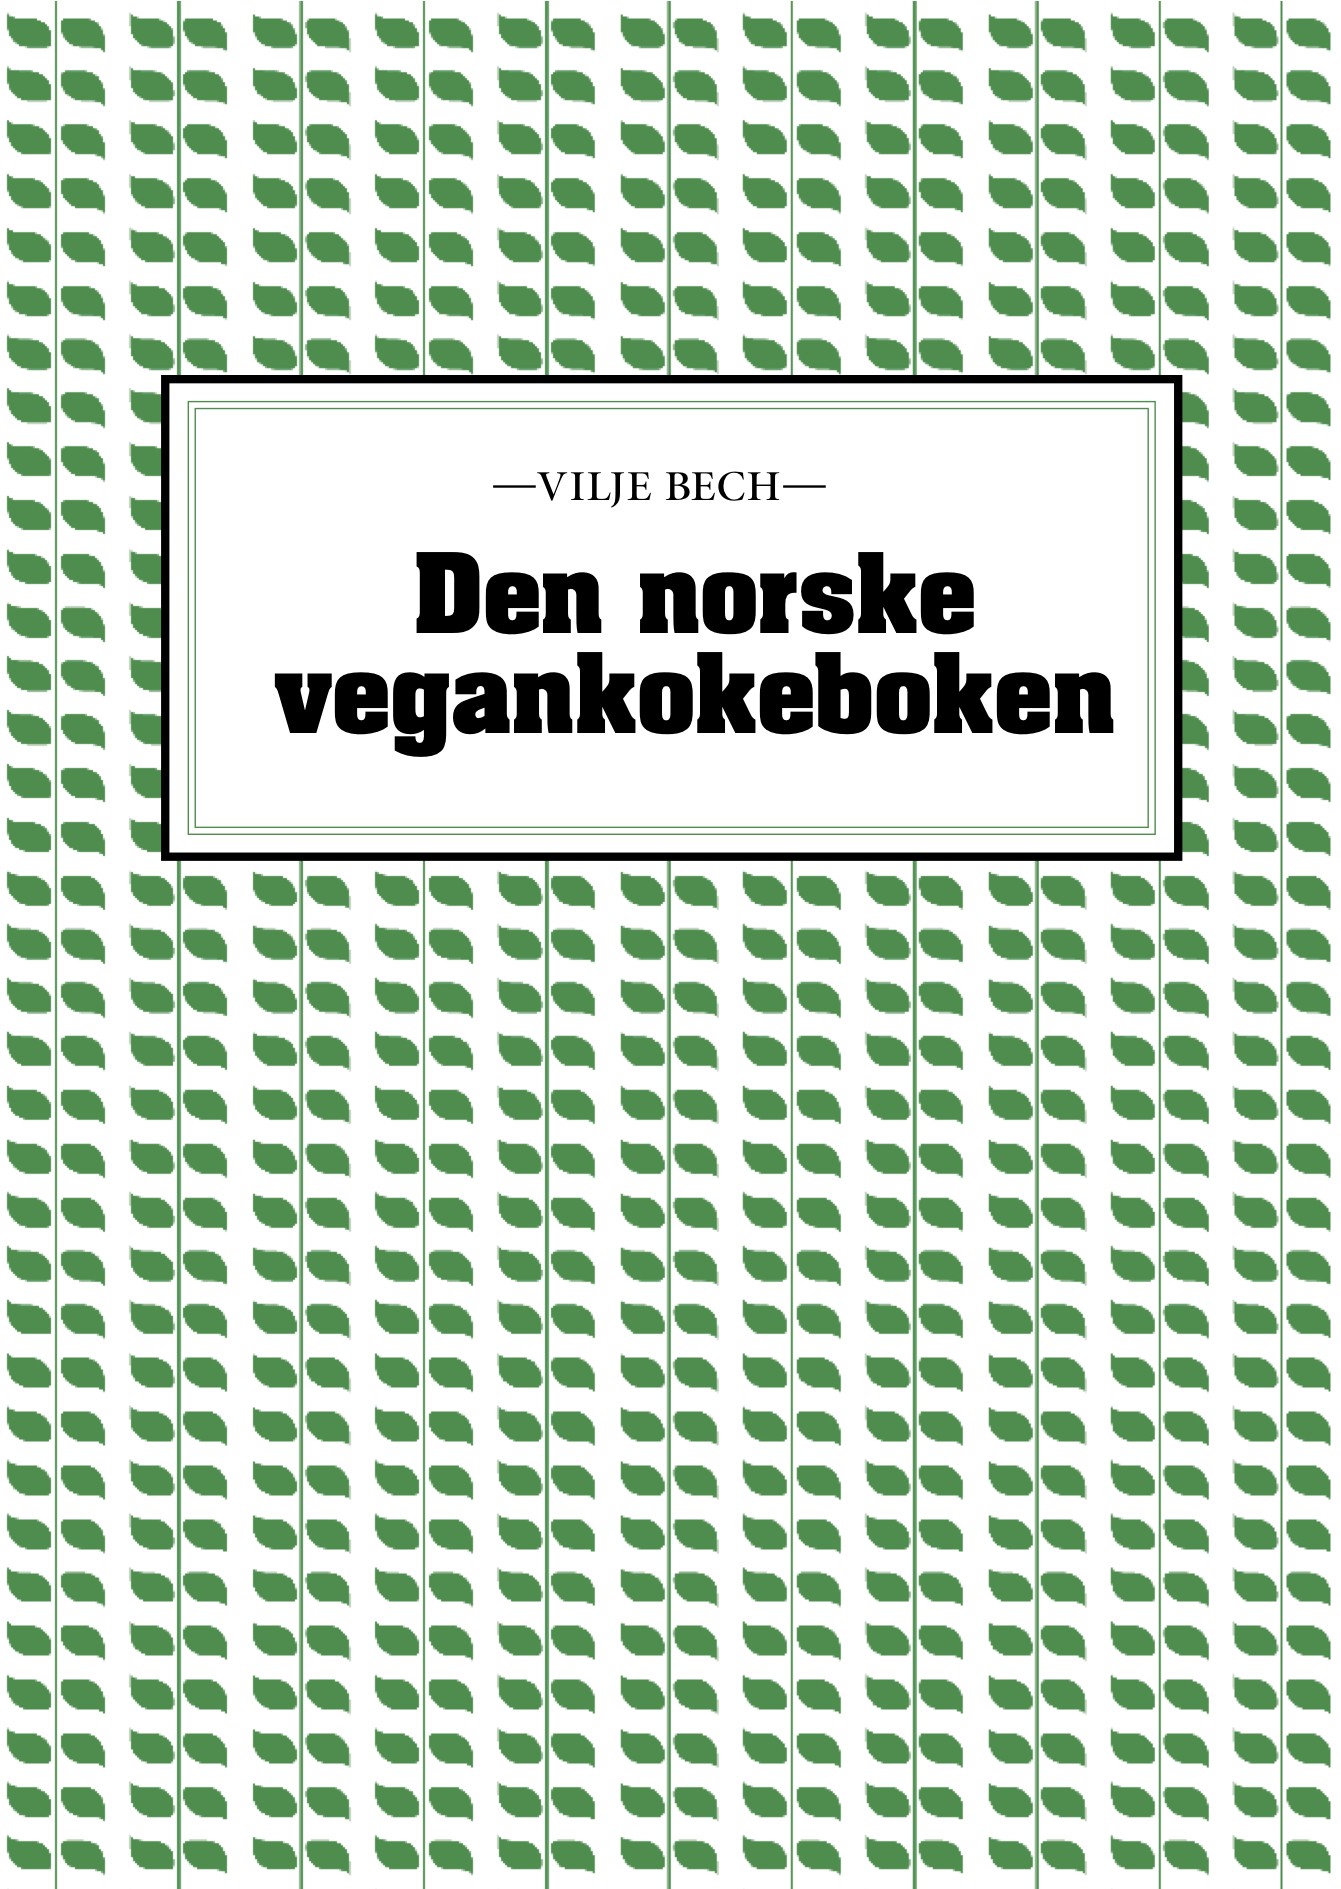 Den norske vegankokeboken - Informasjon til forhandlere Den norske vegankokeboken er den første norske utgivelsen innen sitt område.